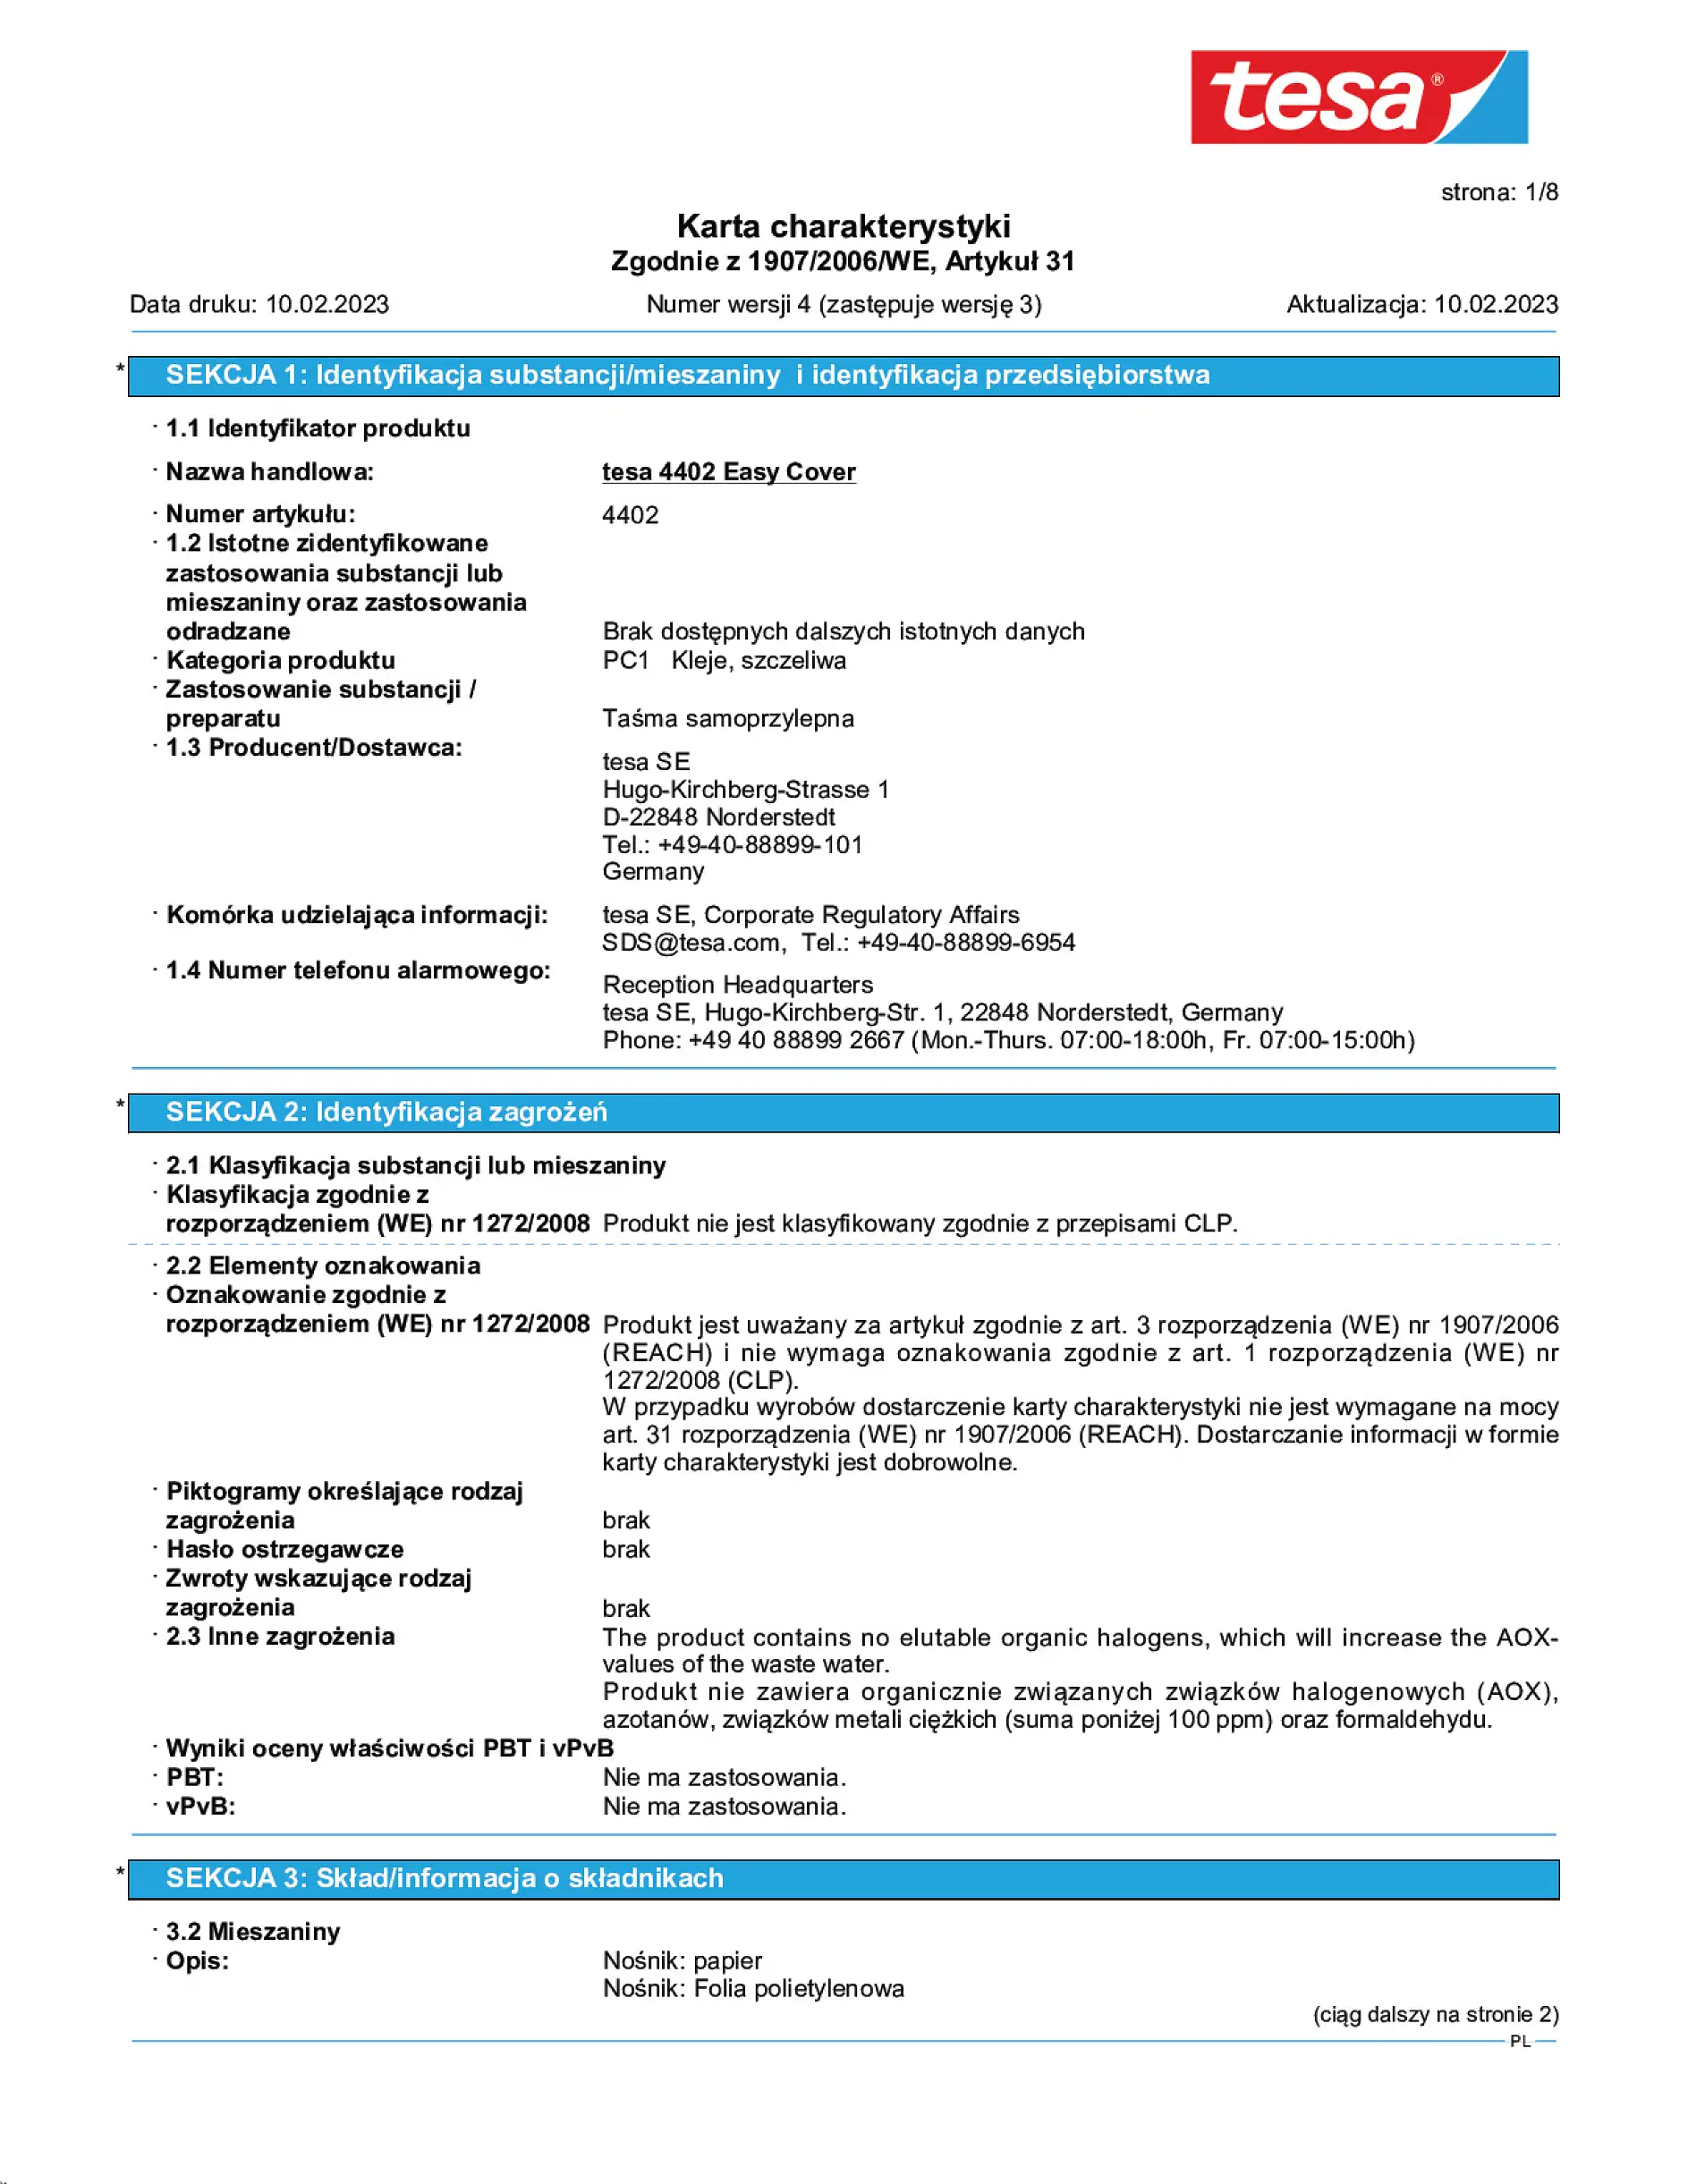 Safety data sheet_tesa® Professional 04402_pl-PL_v4